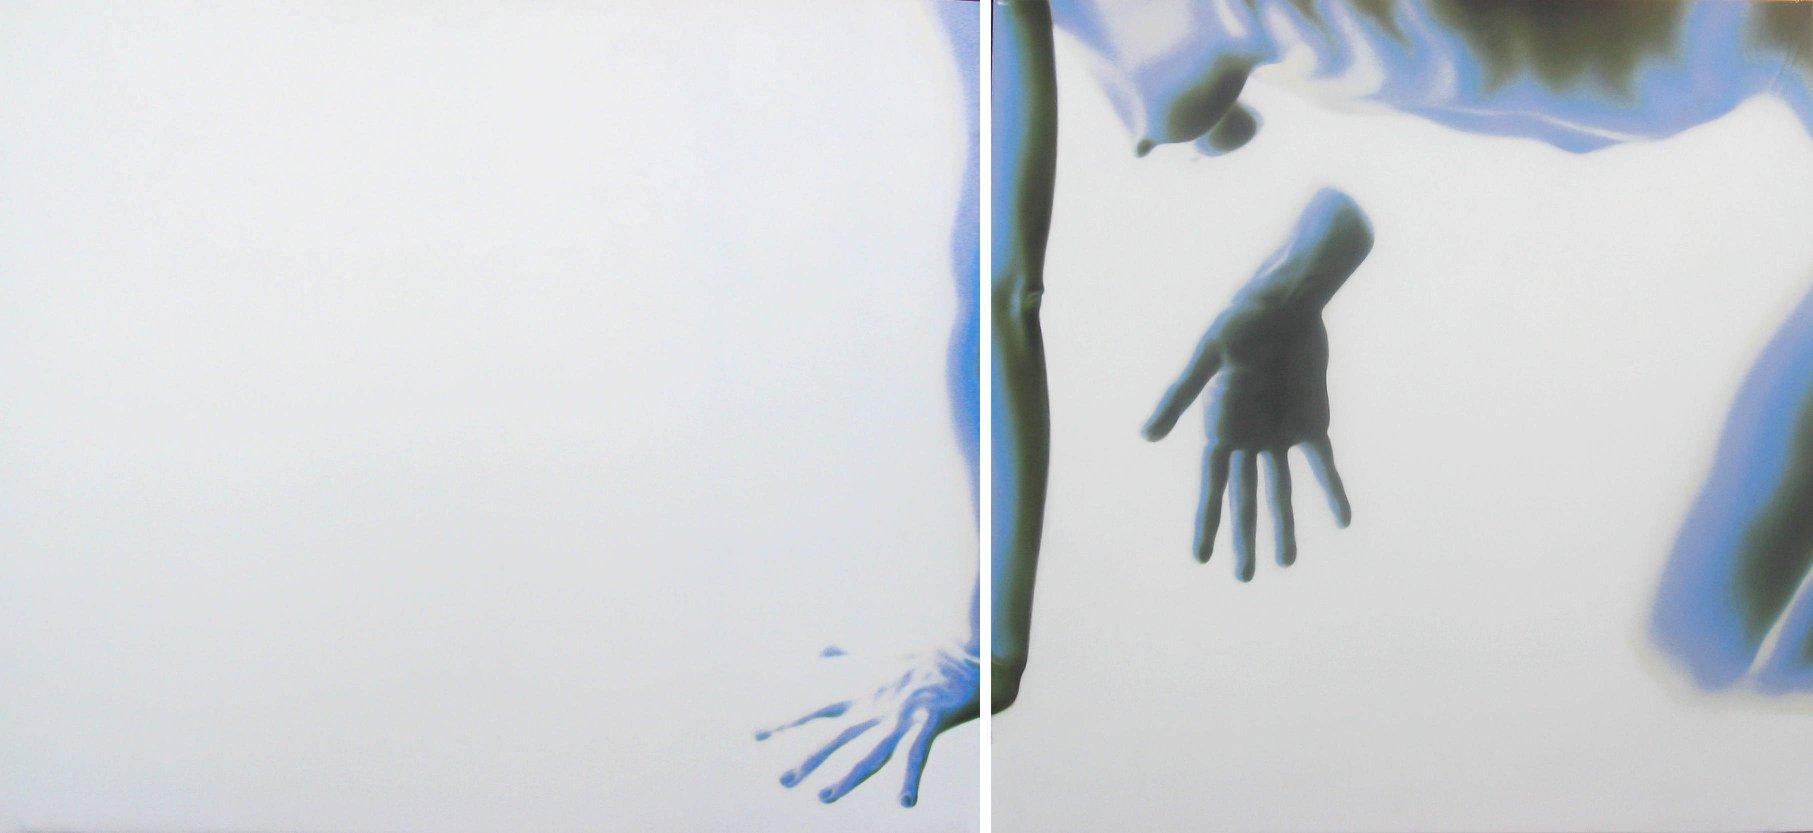 220 x 100 cm, dittico, olio su tela, 2005